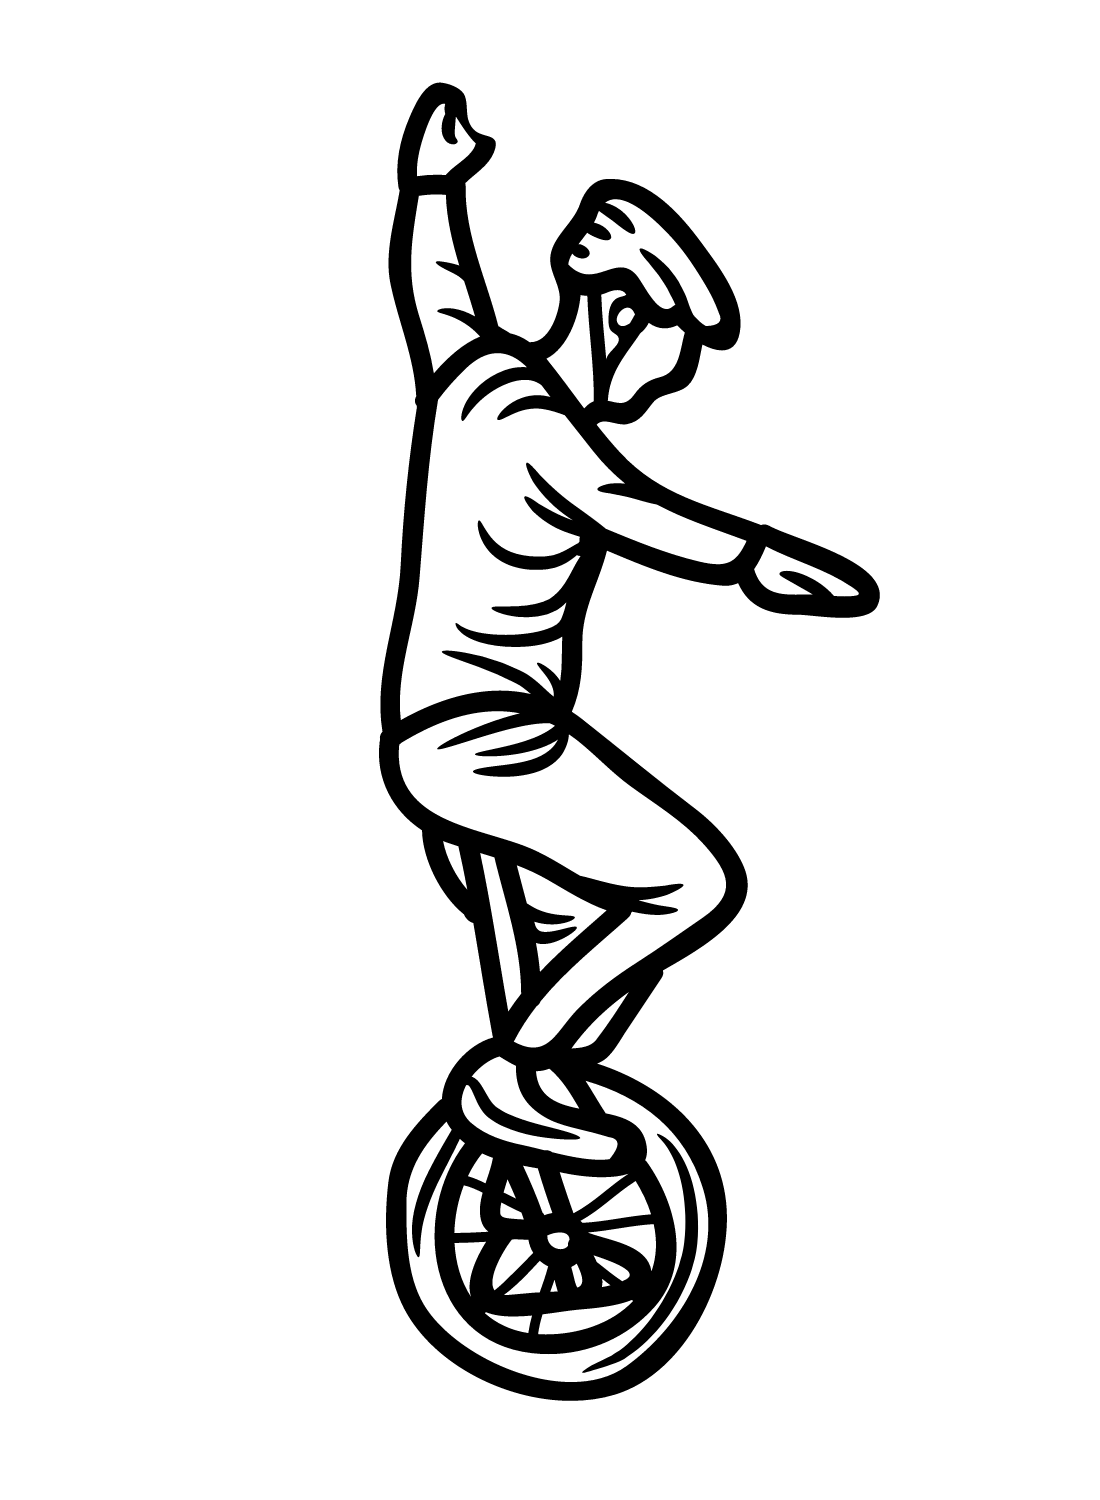 Man met eenwieler van Unicycle